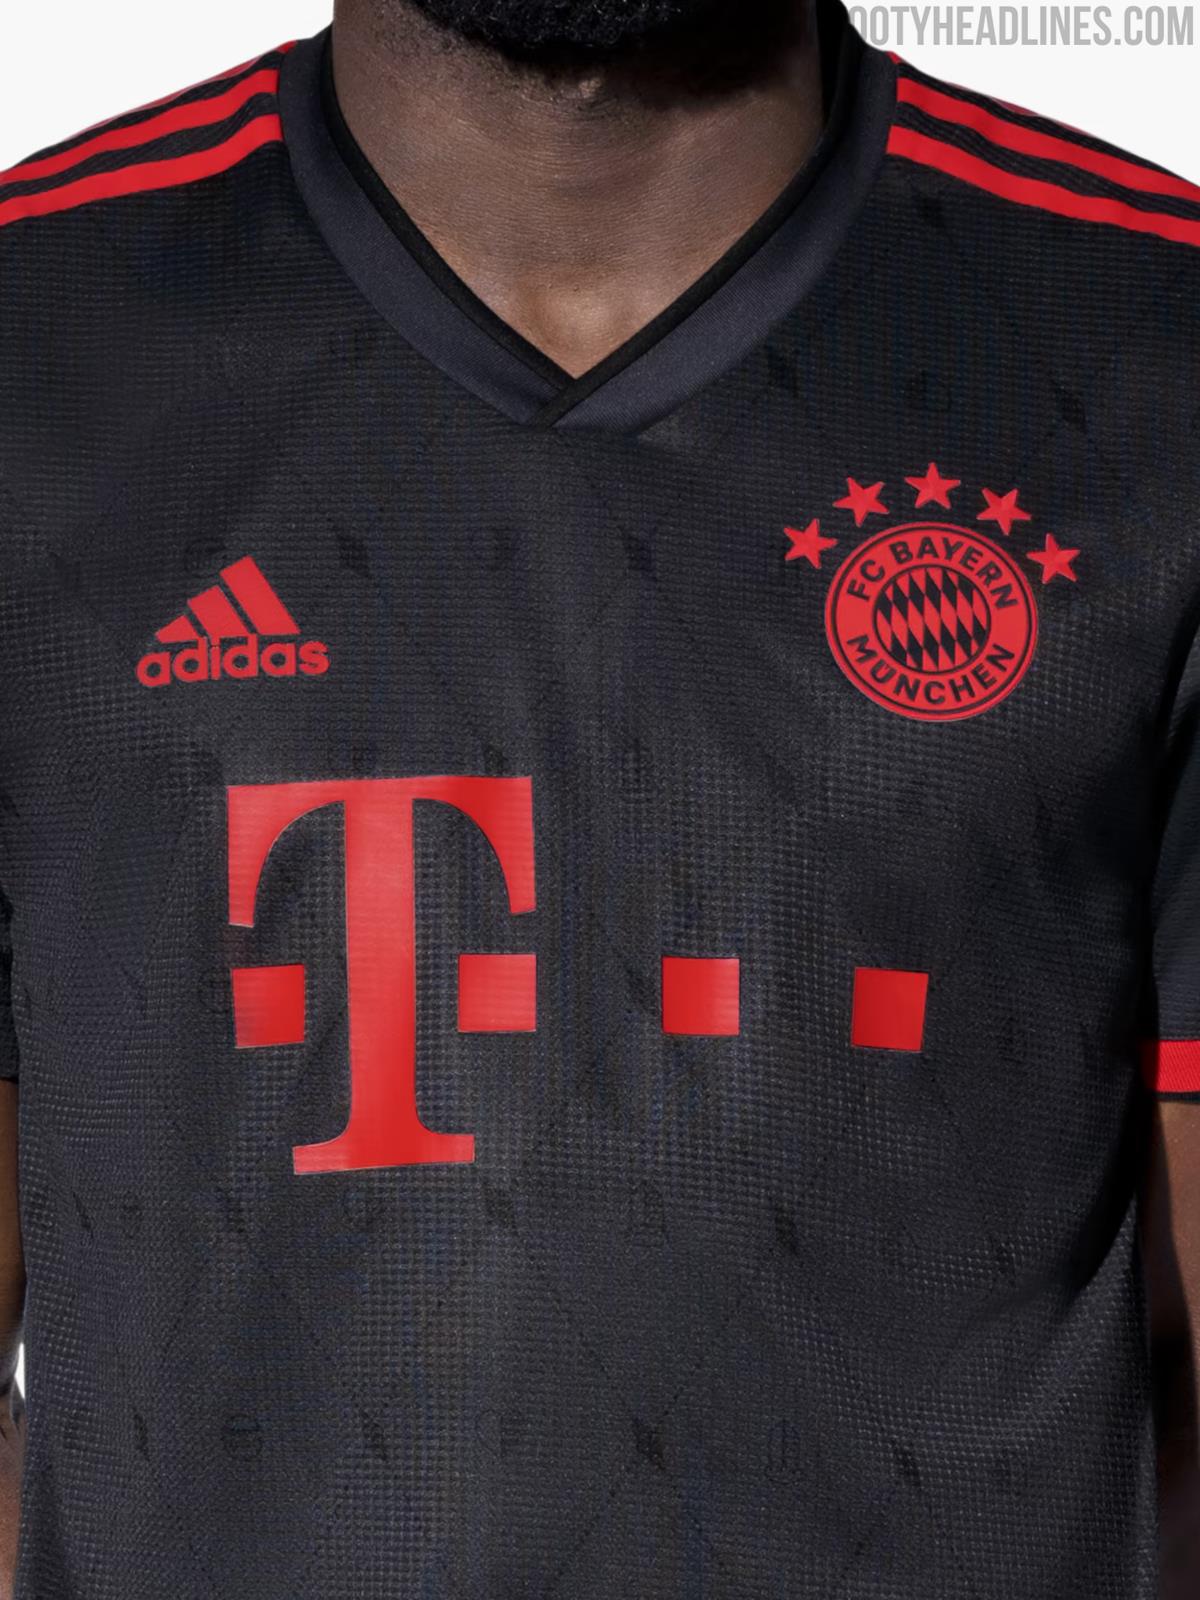 Original Bayern München 22-23 Third Kit Released - Footy Headlines